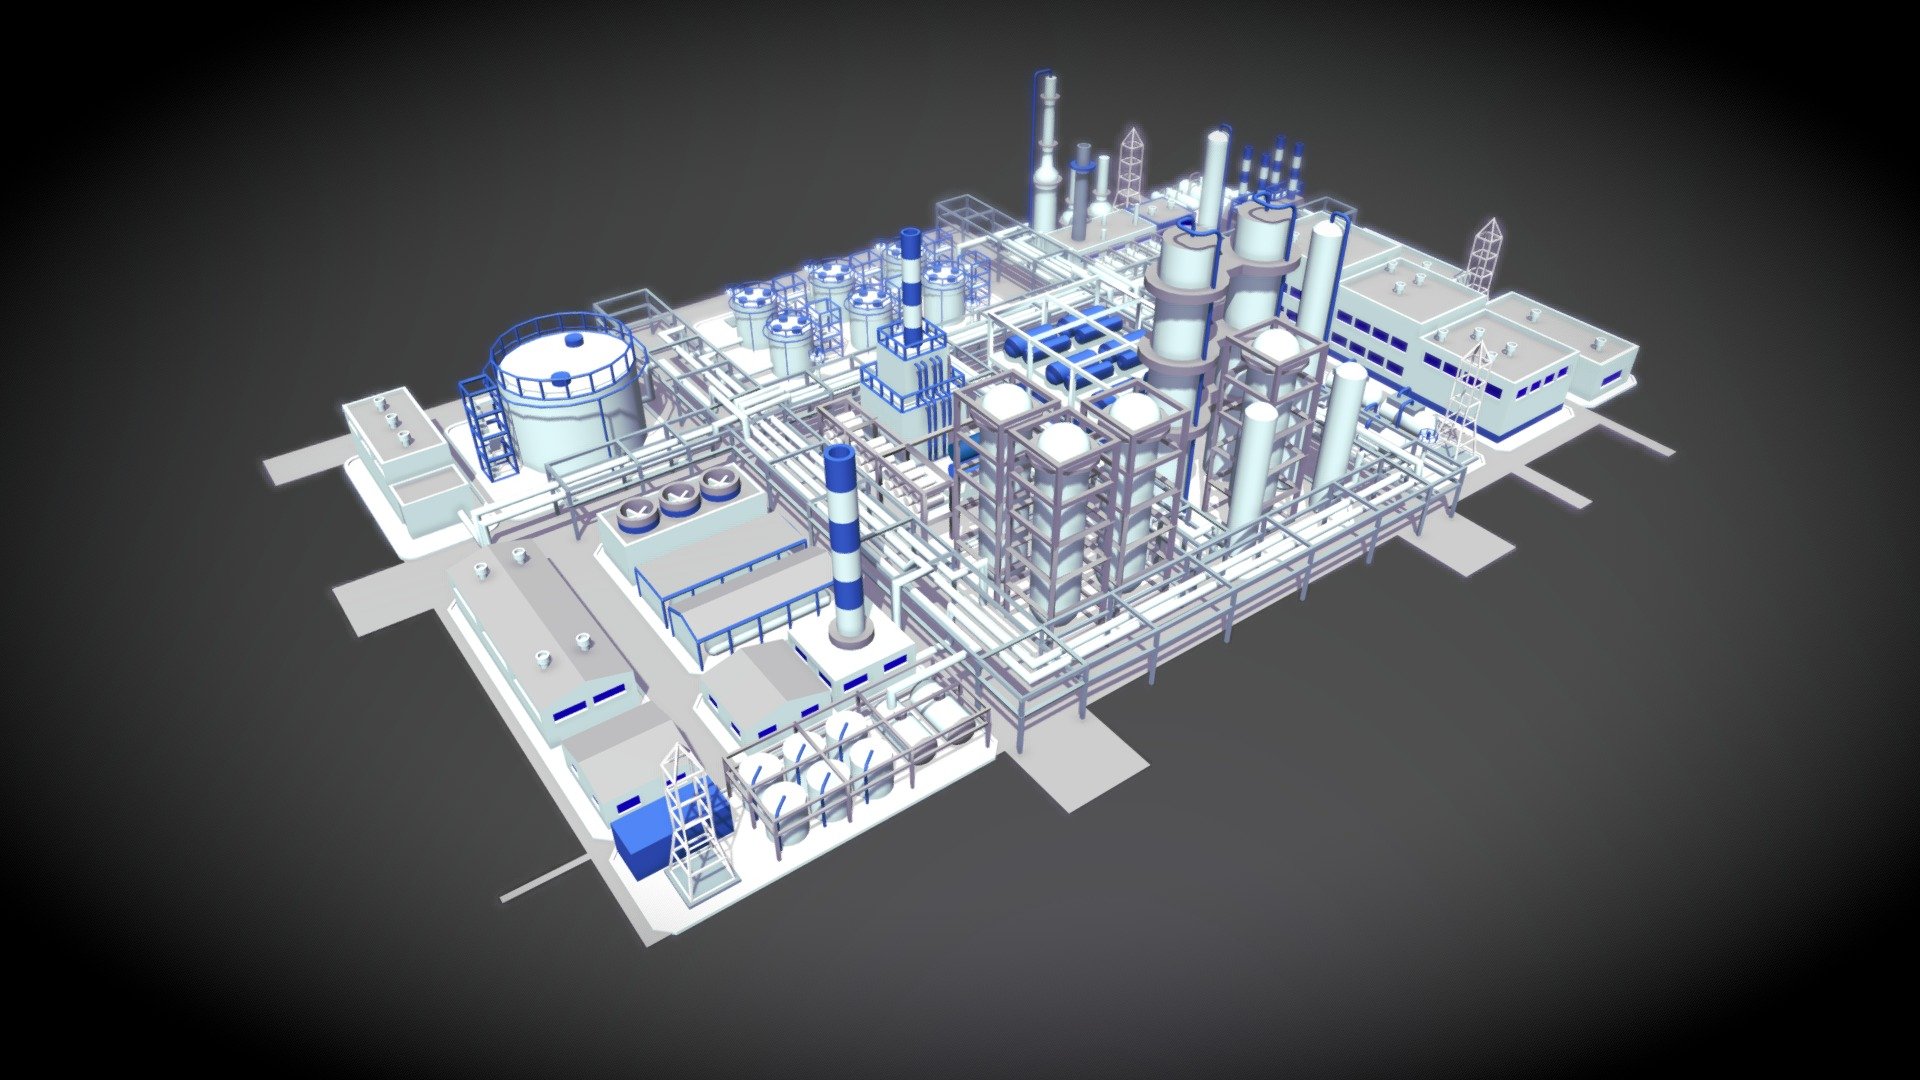 Low poly model of oil refinery - Oil Refinery - 3D model by Saushkin 3d model